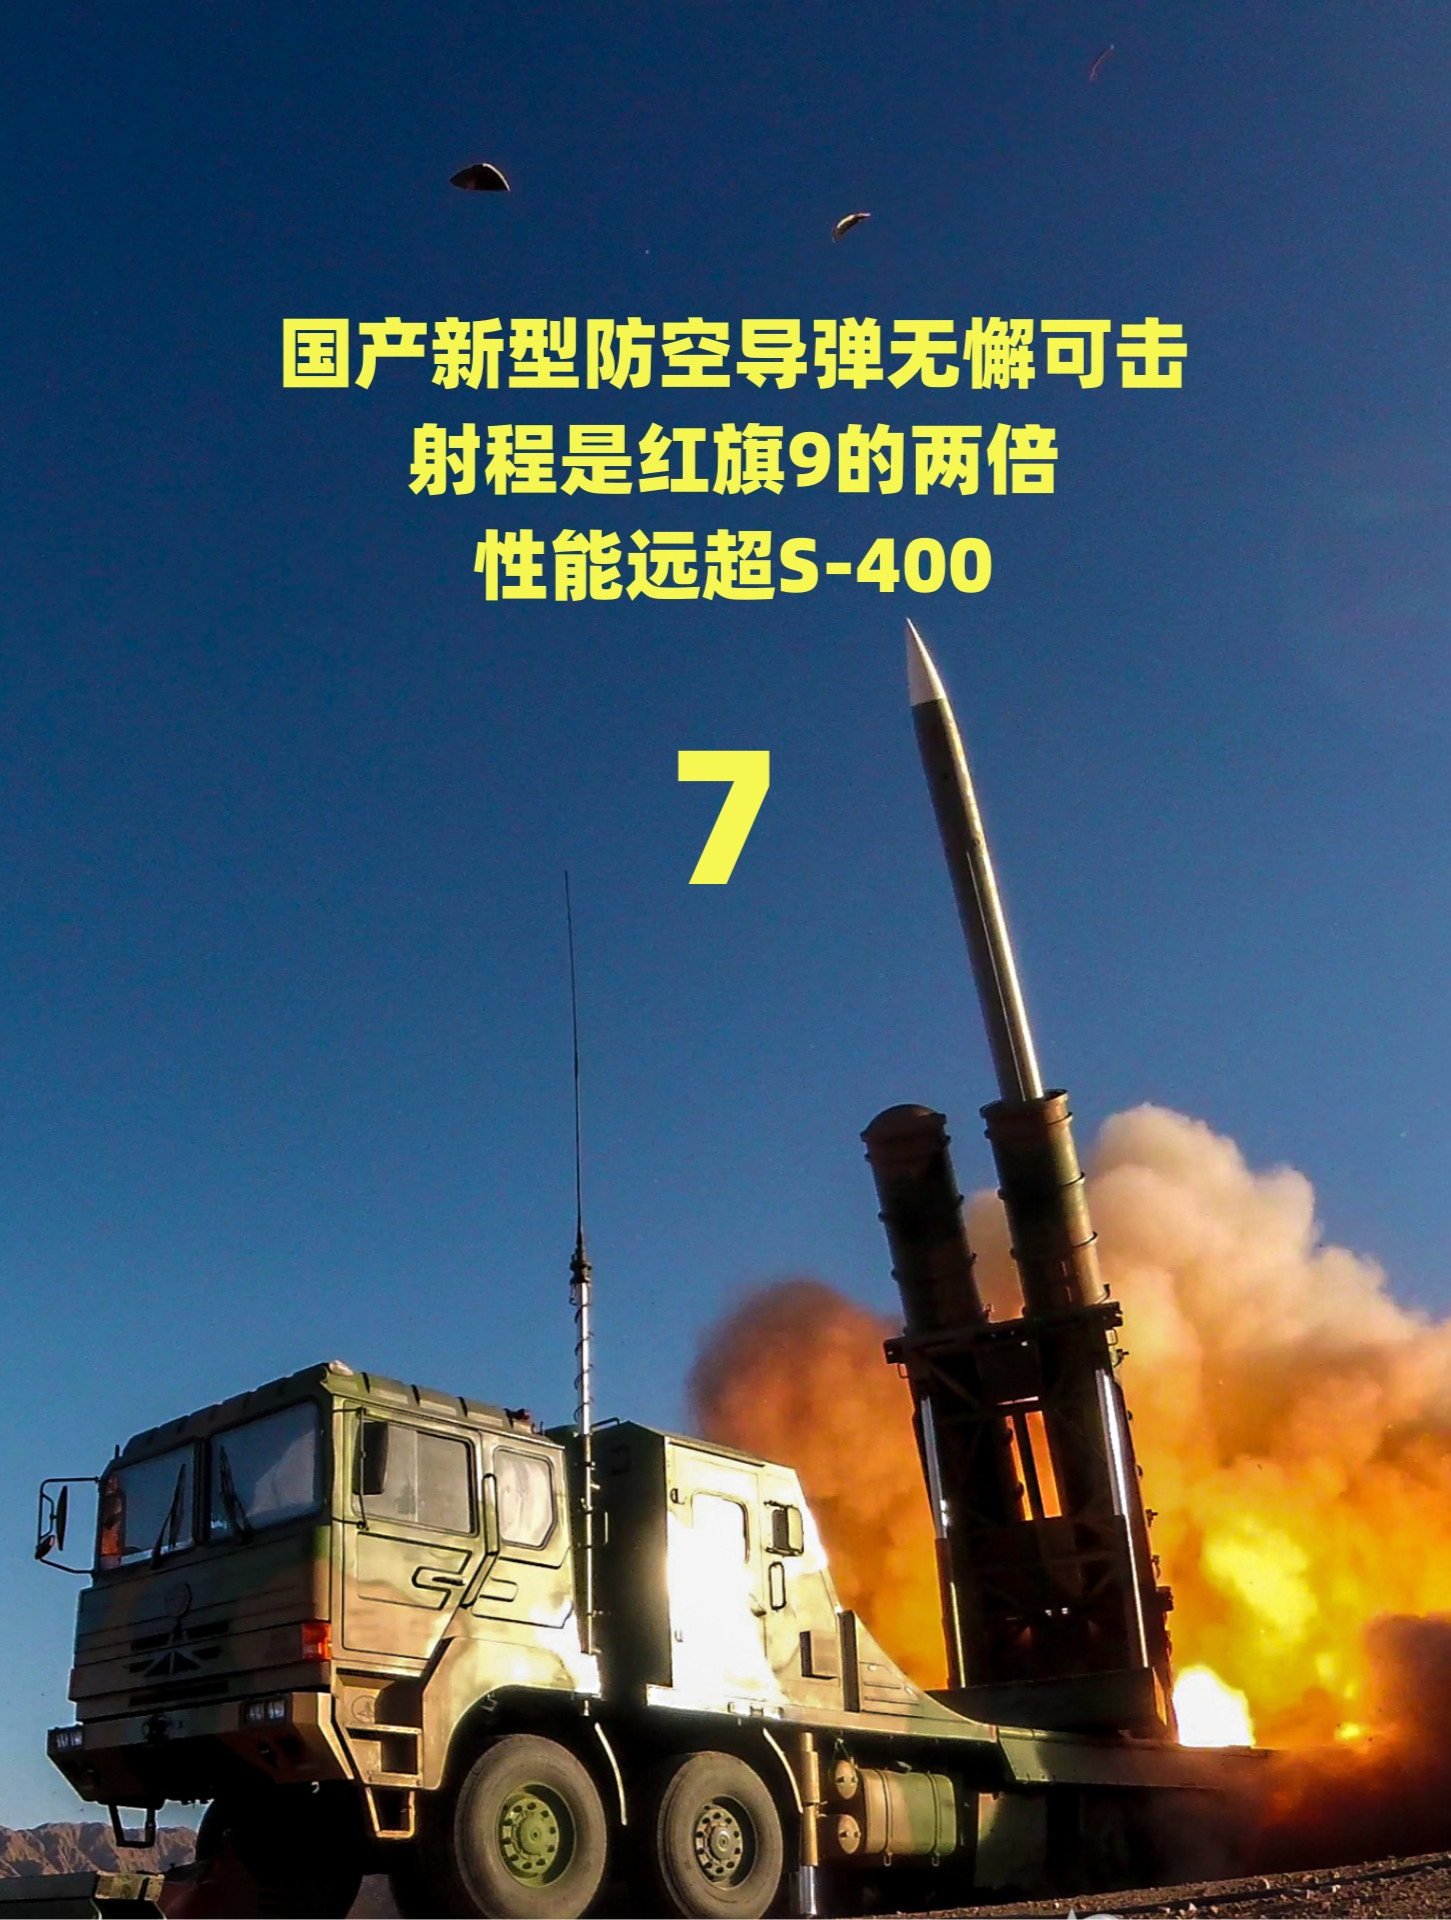 国产新型防空导弹无懈可击,射程是红旗9的两倍,性能远超s